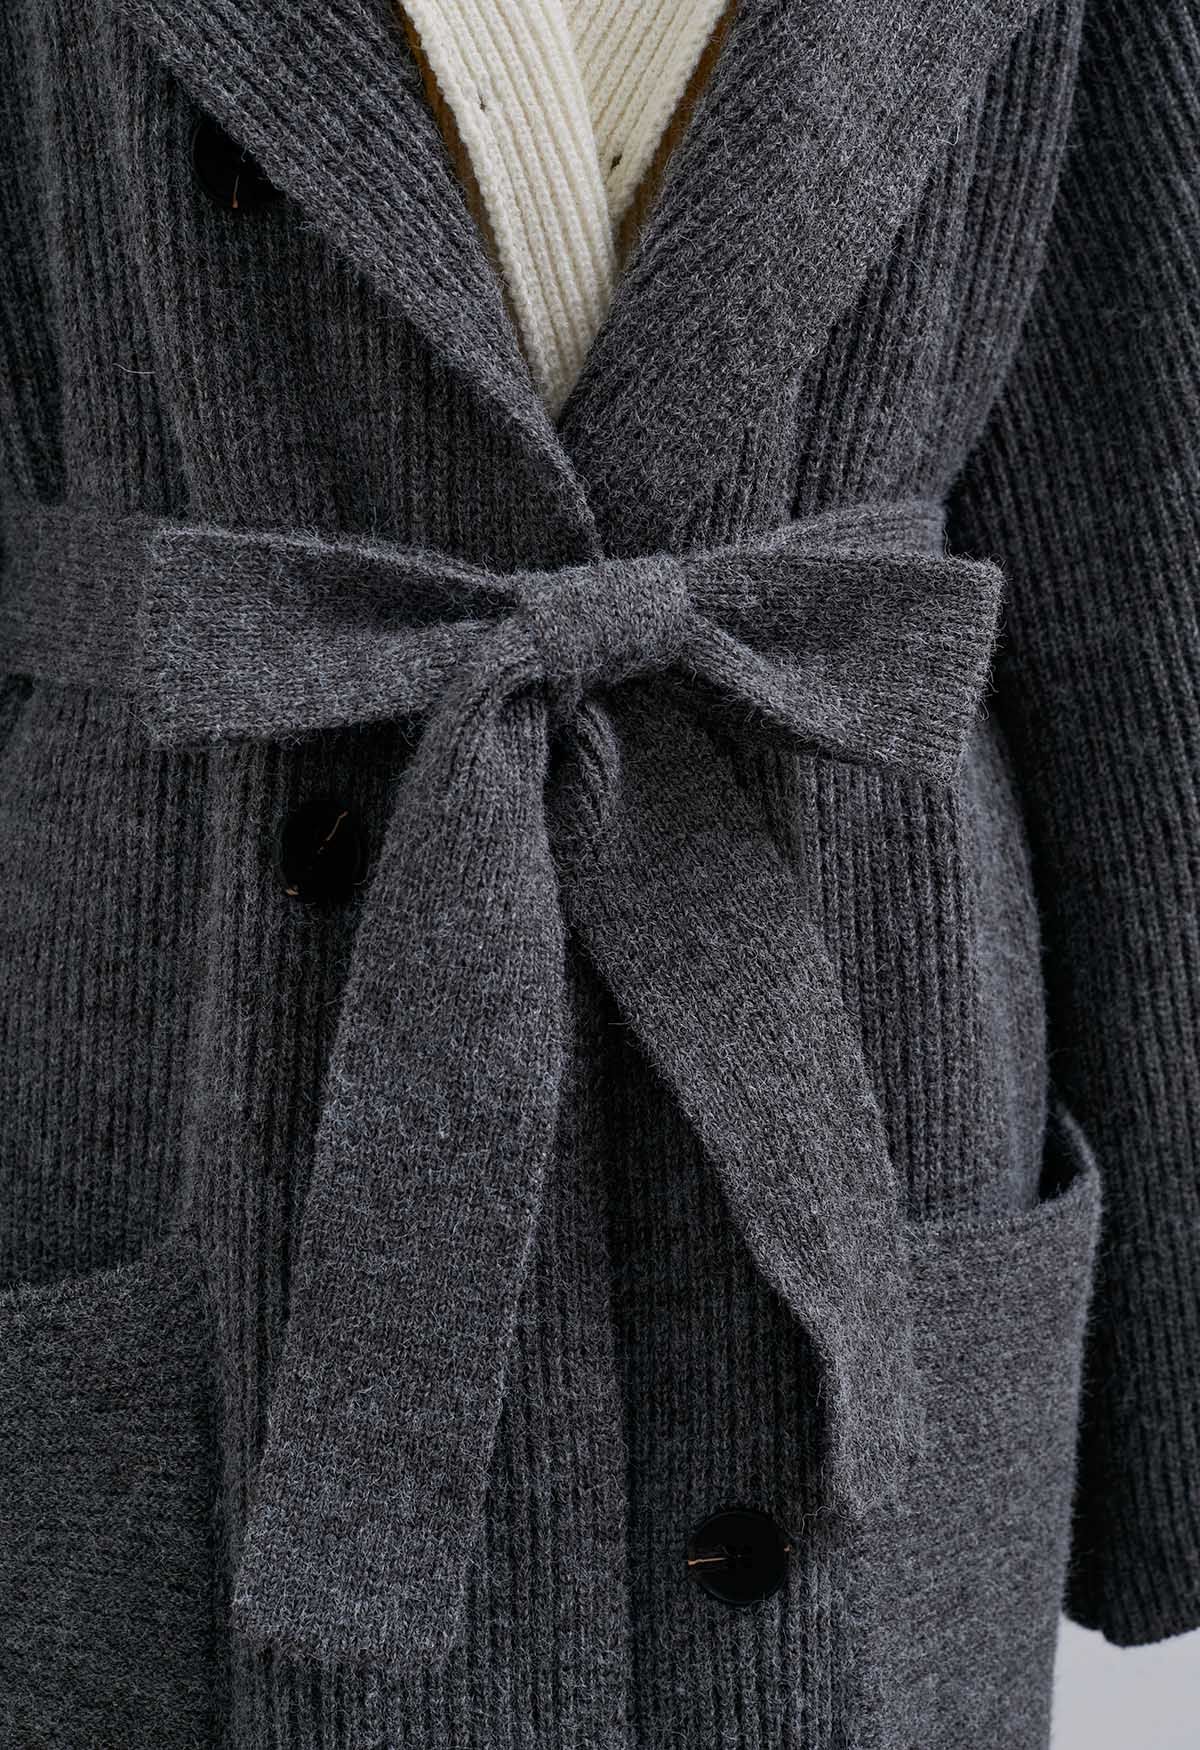 Faux manteau long à capuche deux pièces contrasté en gris